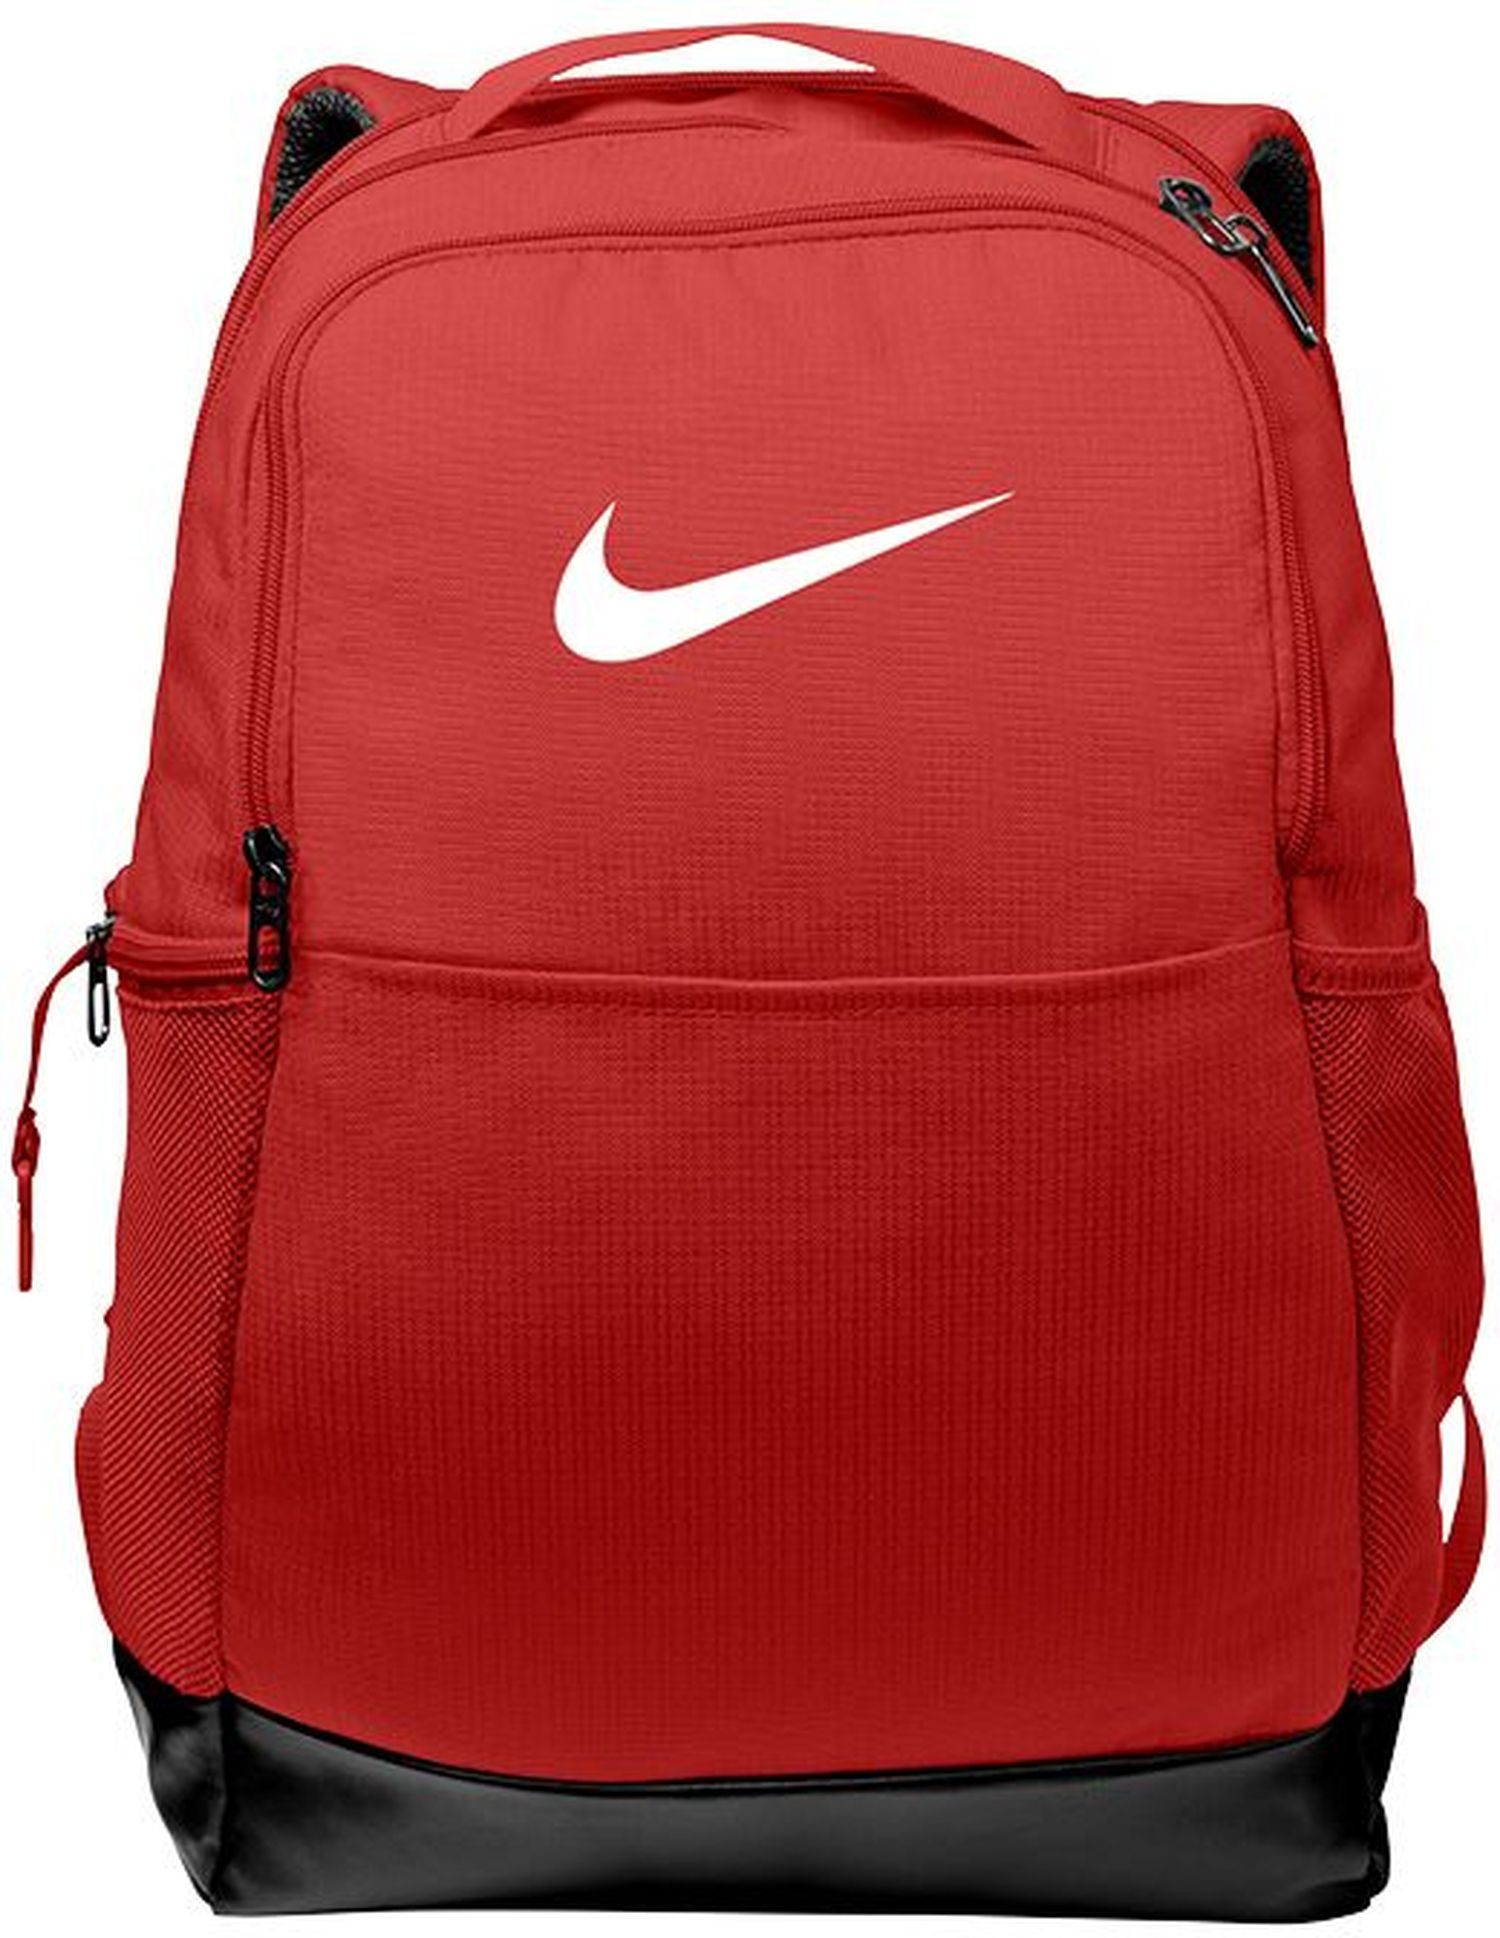 Nike Brasilia Medium Backpack 18"h x 12"w x 7"d